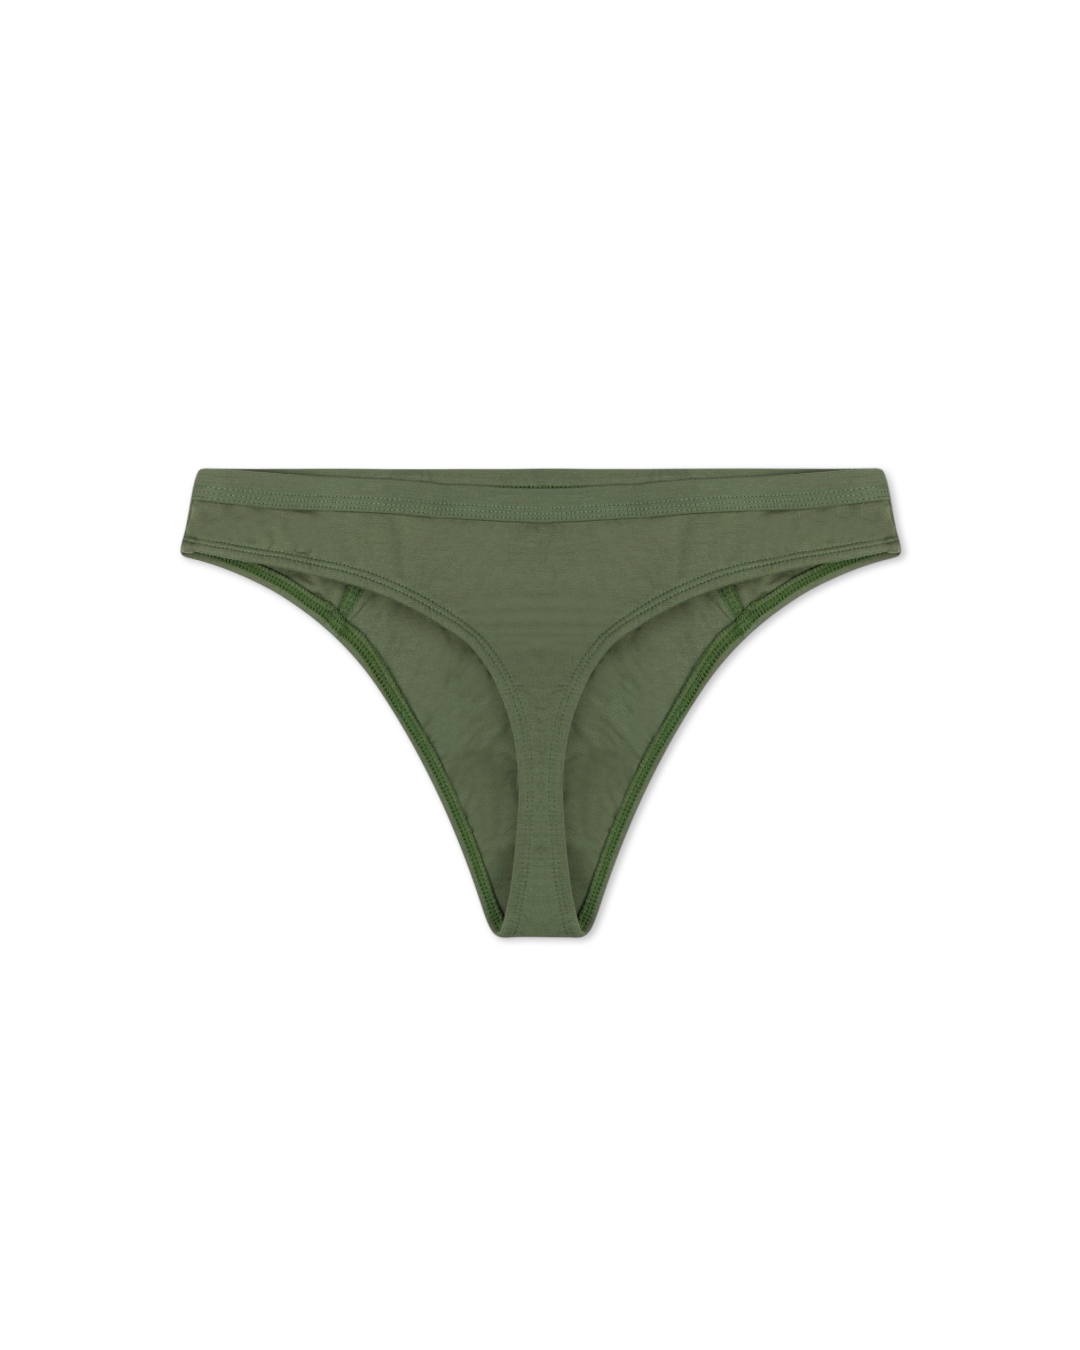 White Ivy Women's Thong Panties Underwear - 10 or Nepal